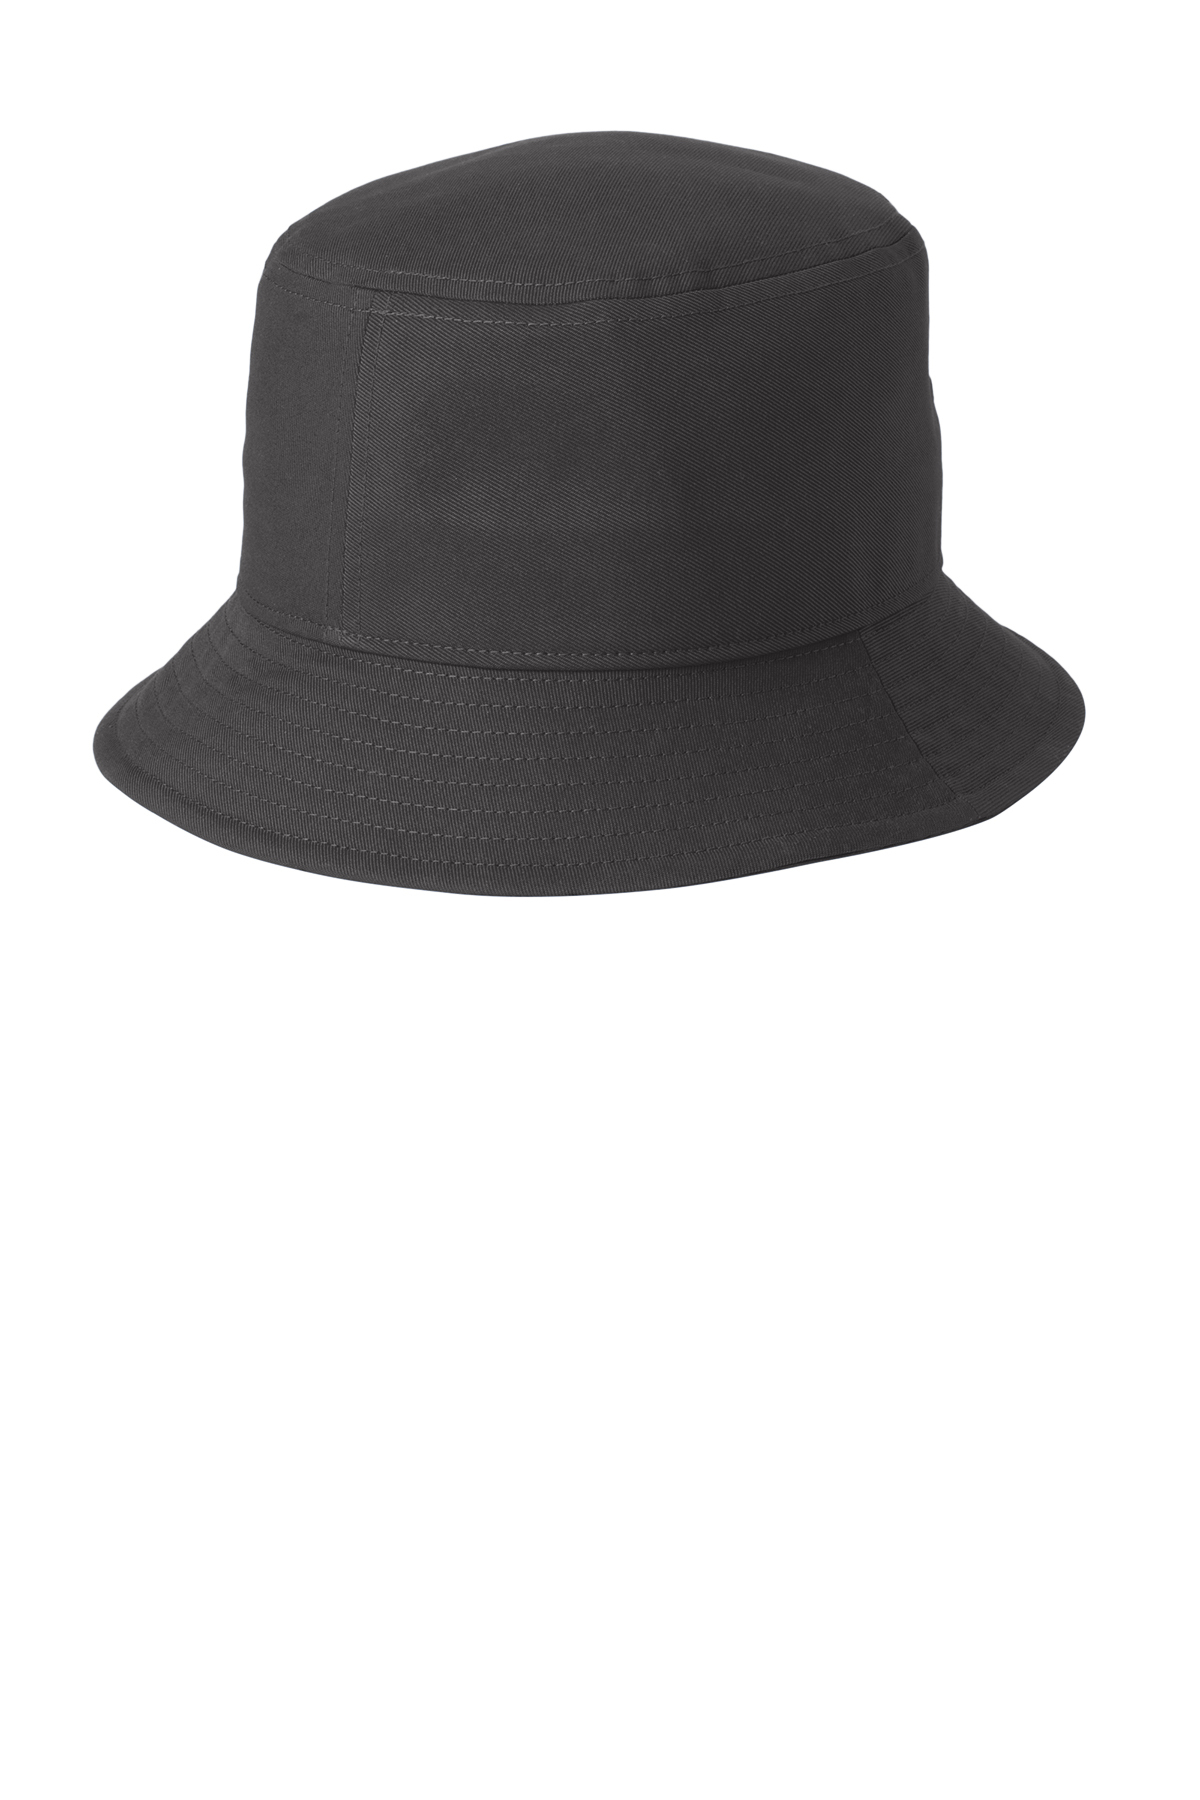 Nike Swoosh Bucket Hat, Product